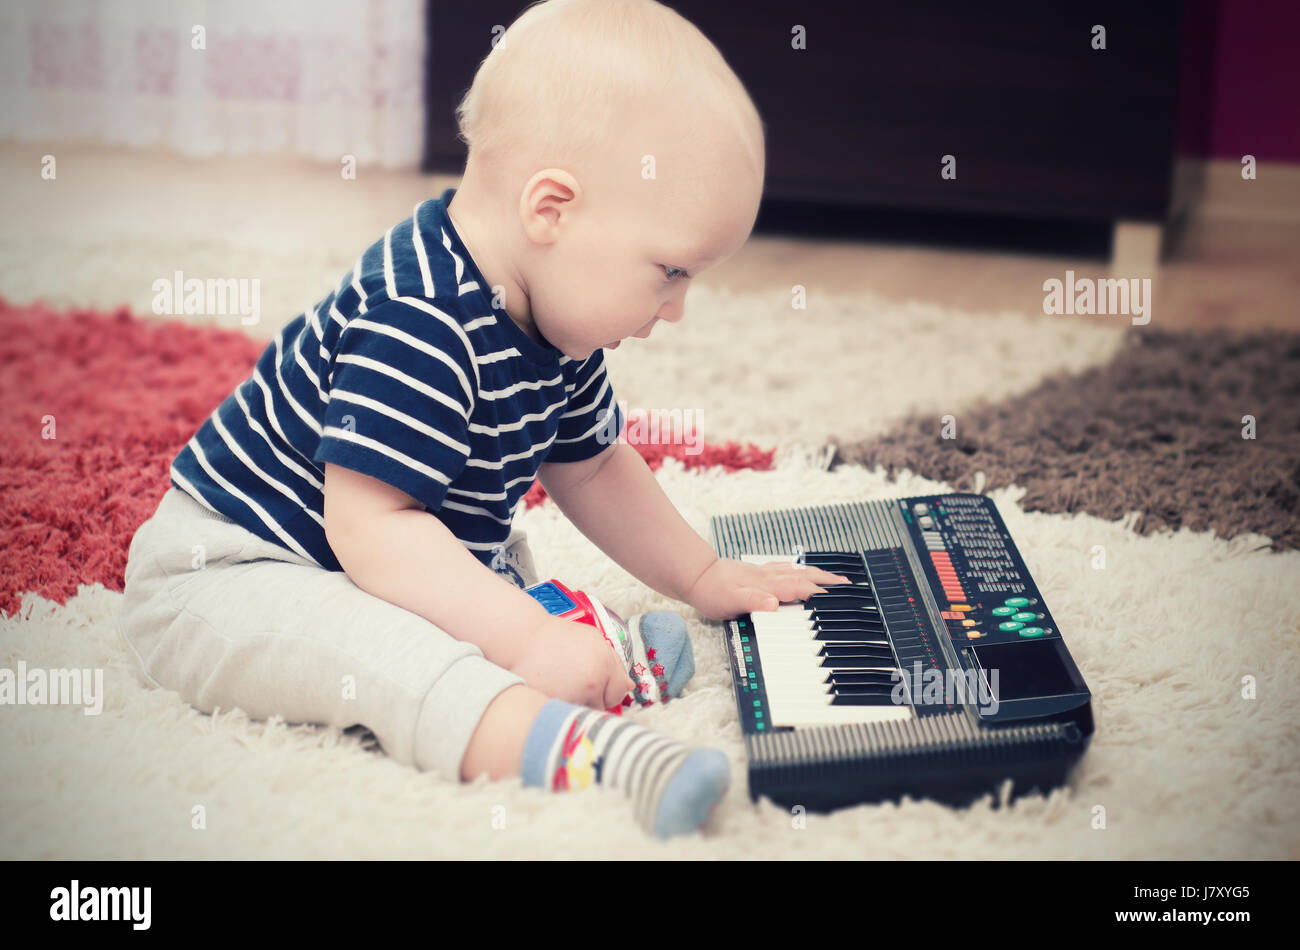 Kleine Baby junge spielt auf Tastatur Spielzeug. Baby-Piano-Musik spielen Kind weiße süße kleine Konzept Stockfoto